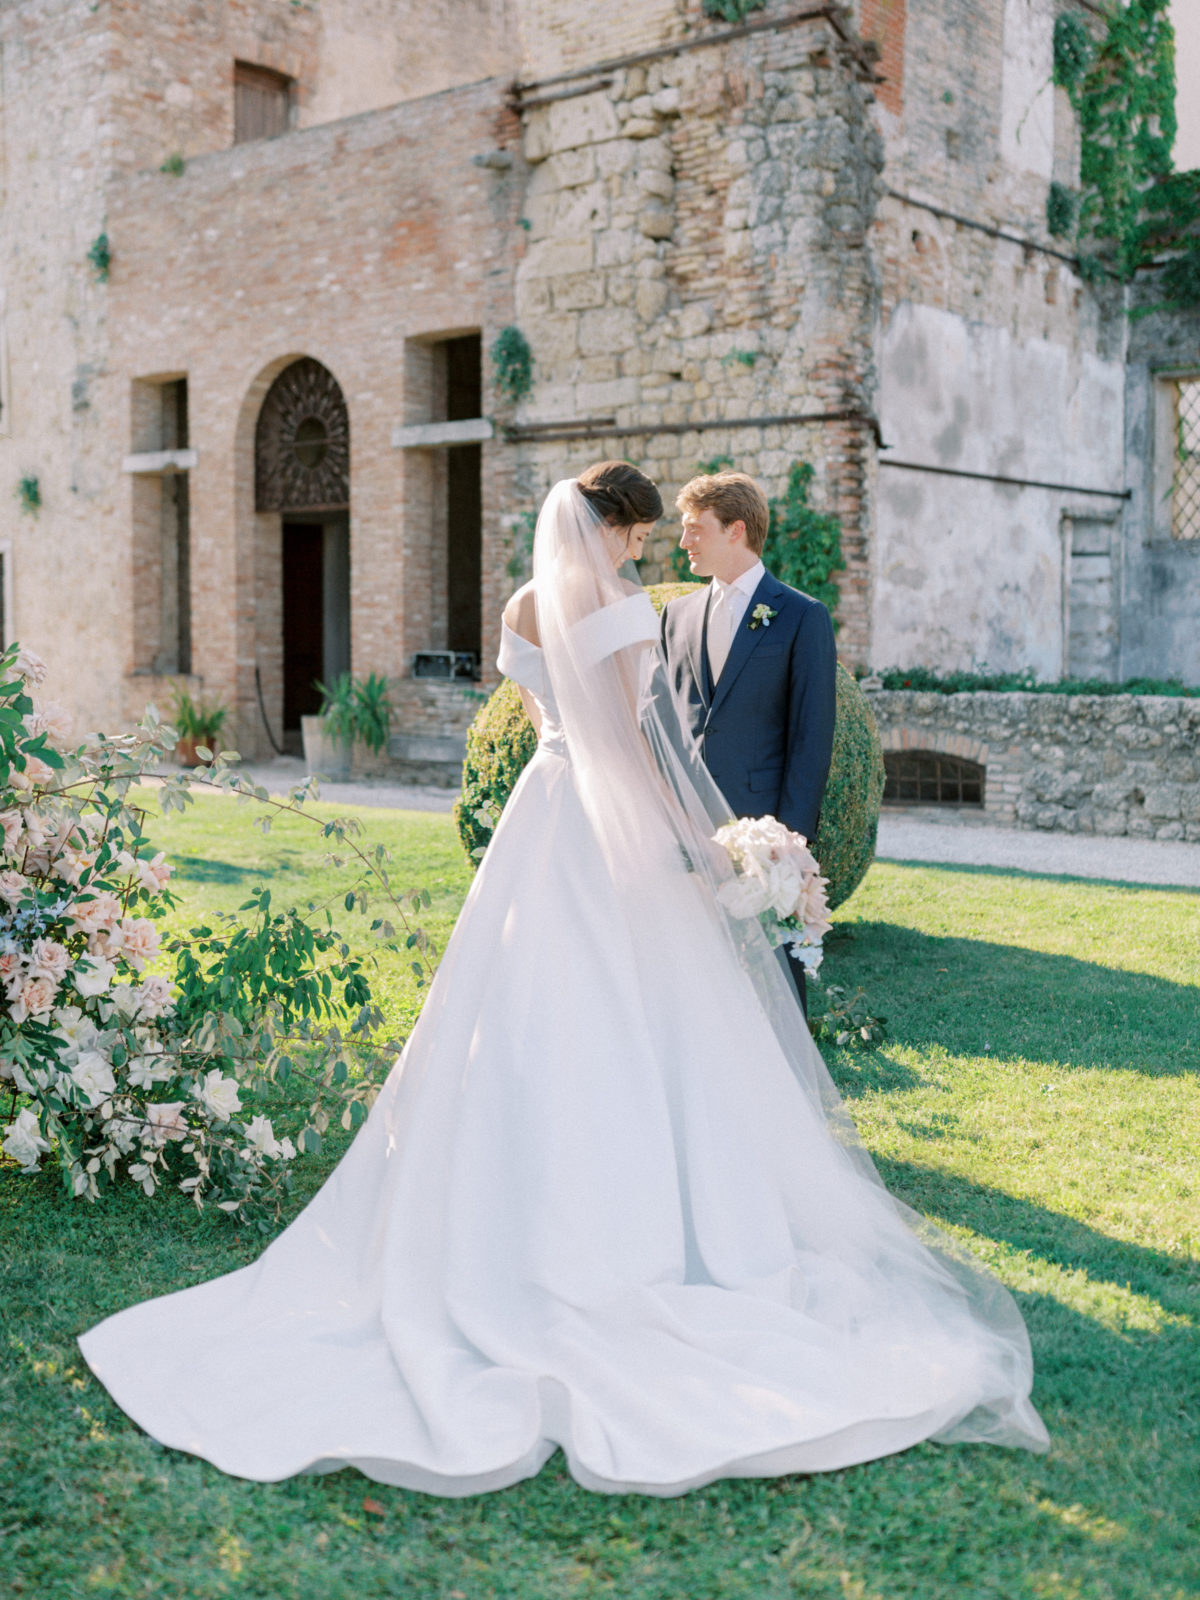 Tuscany wedding in Italy